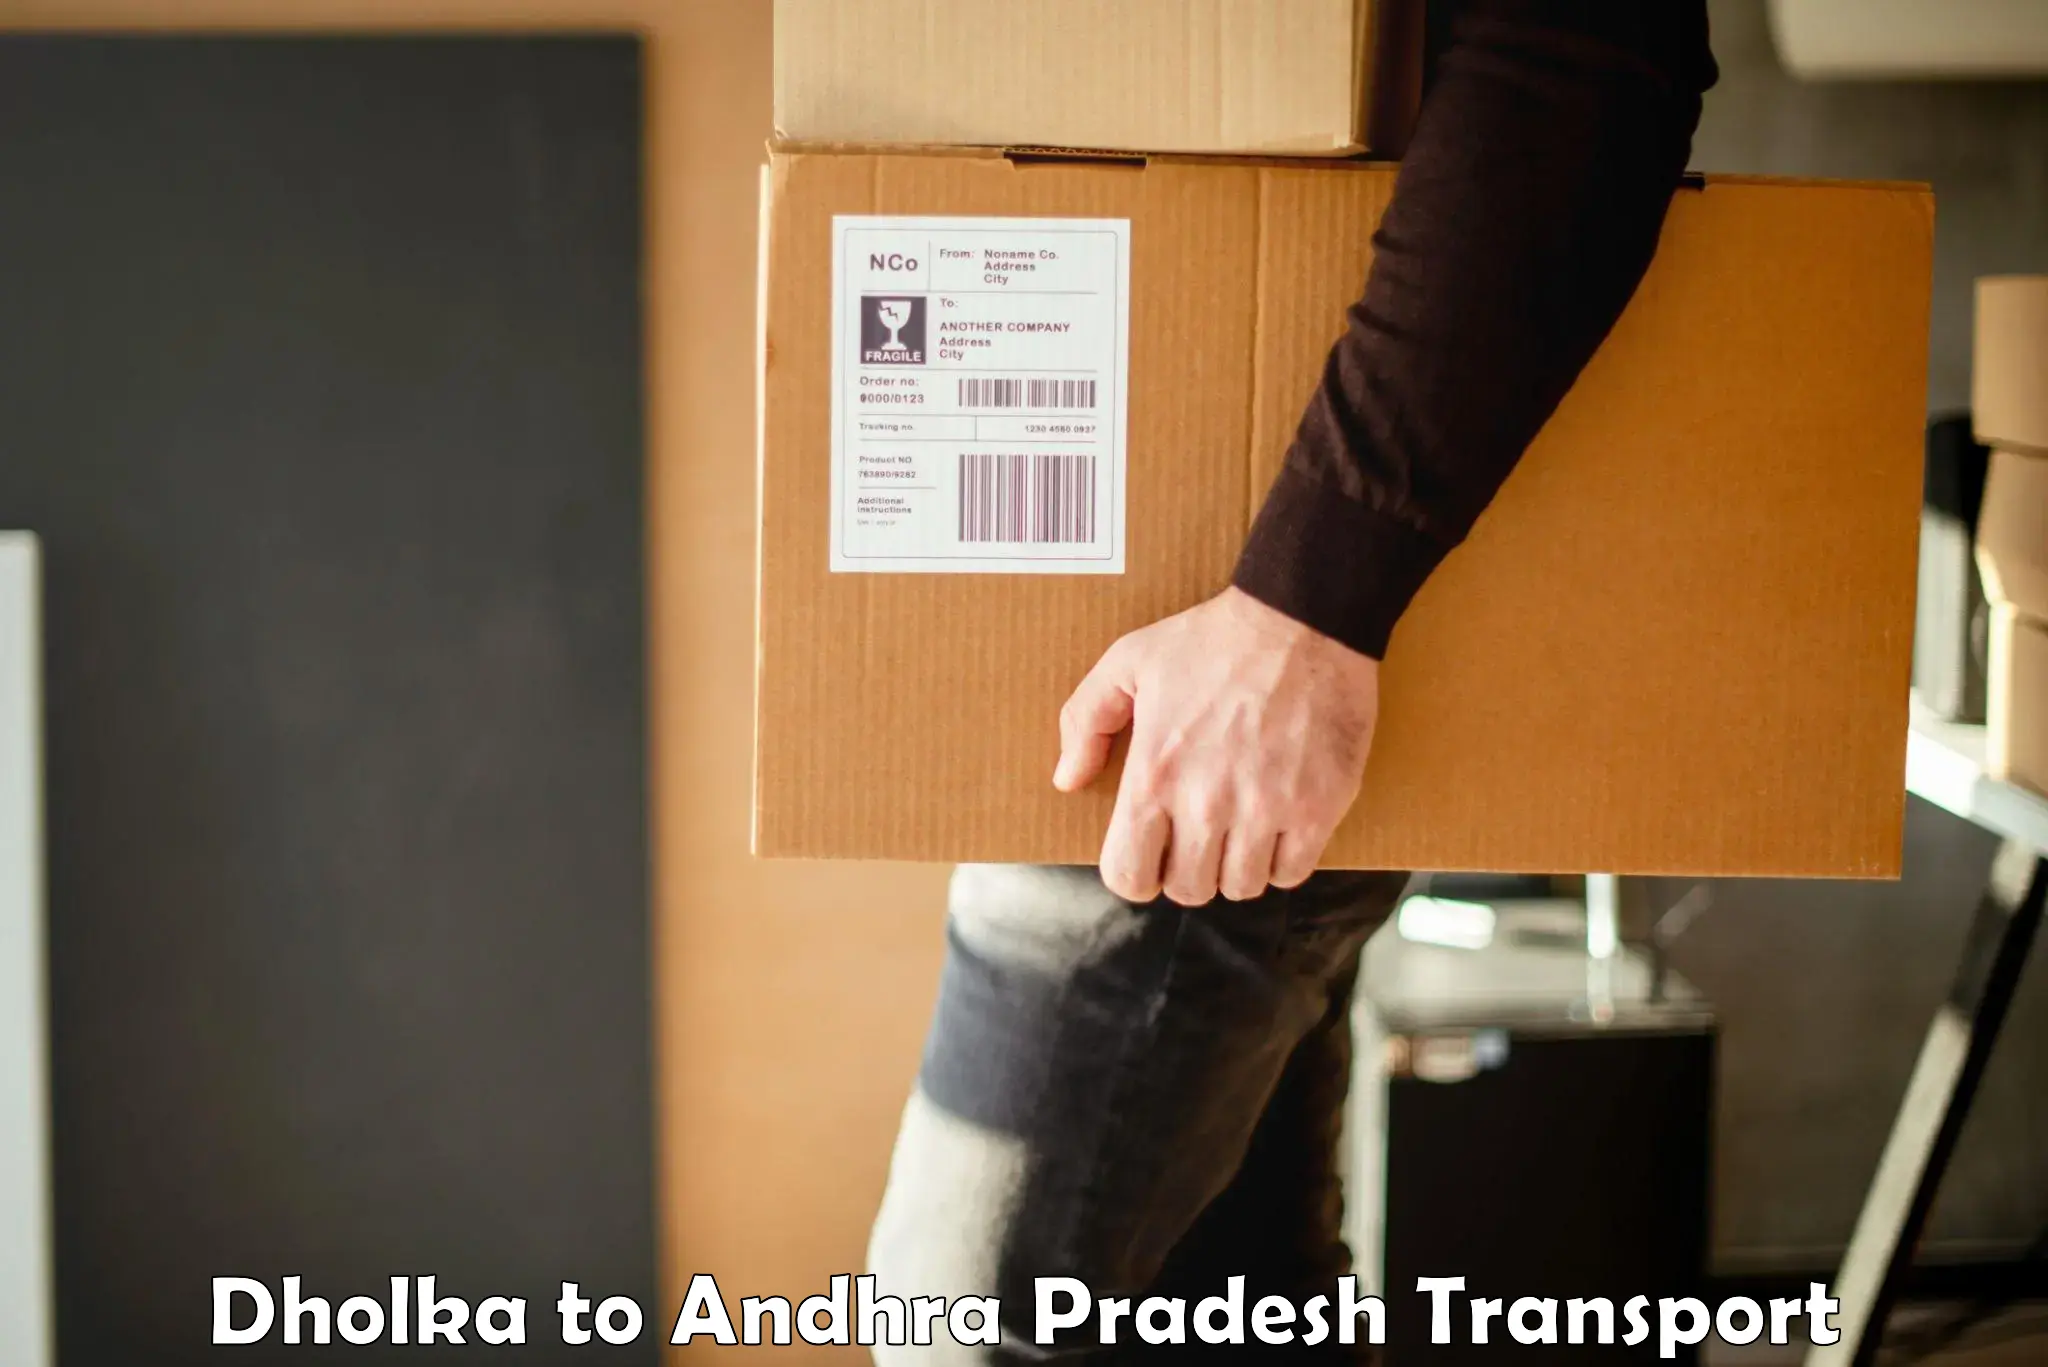 Furniture transport service Dholka to Lingapalem